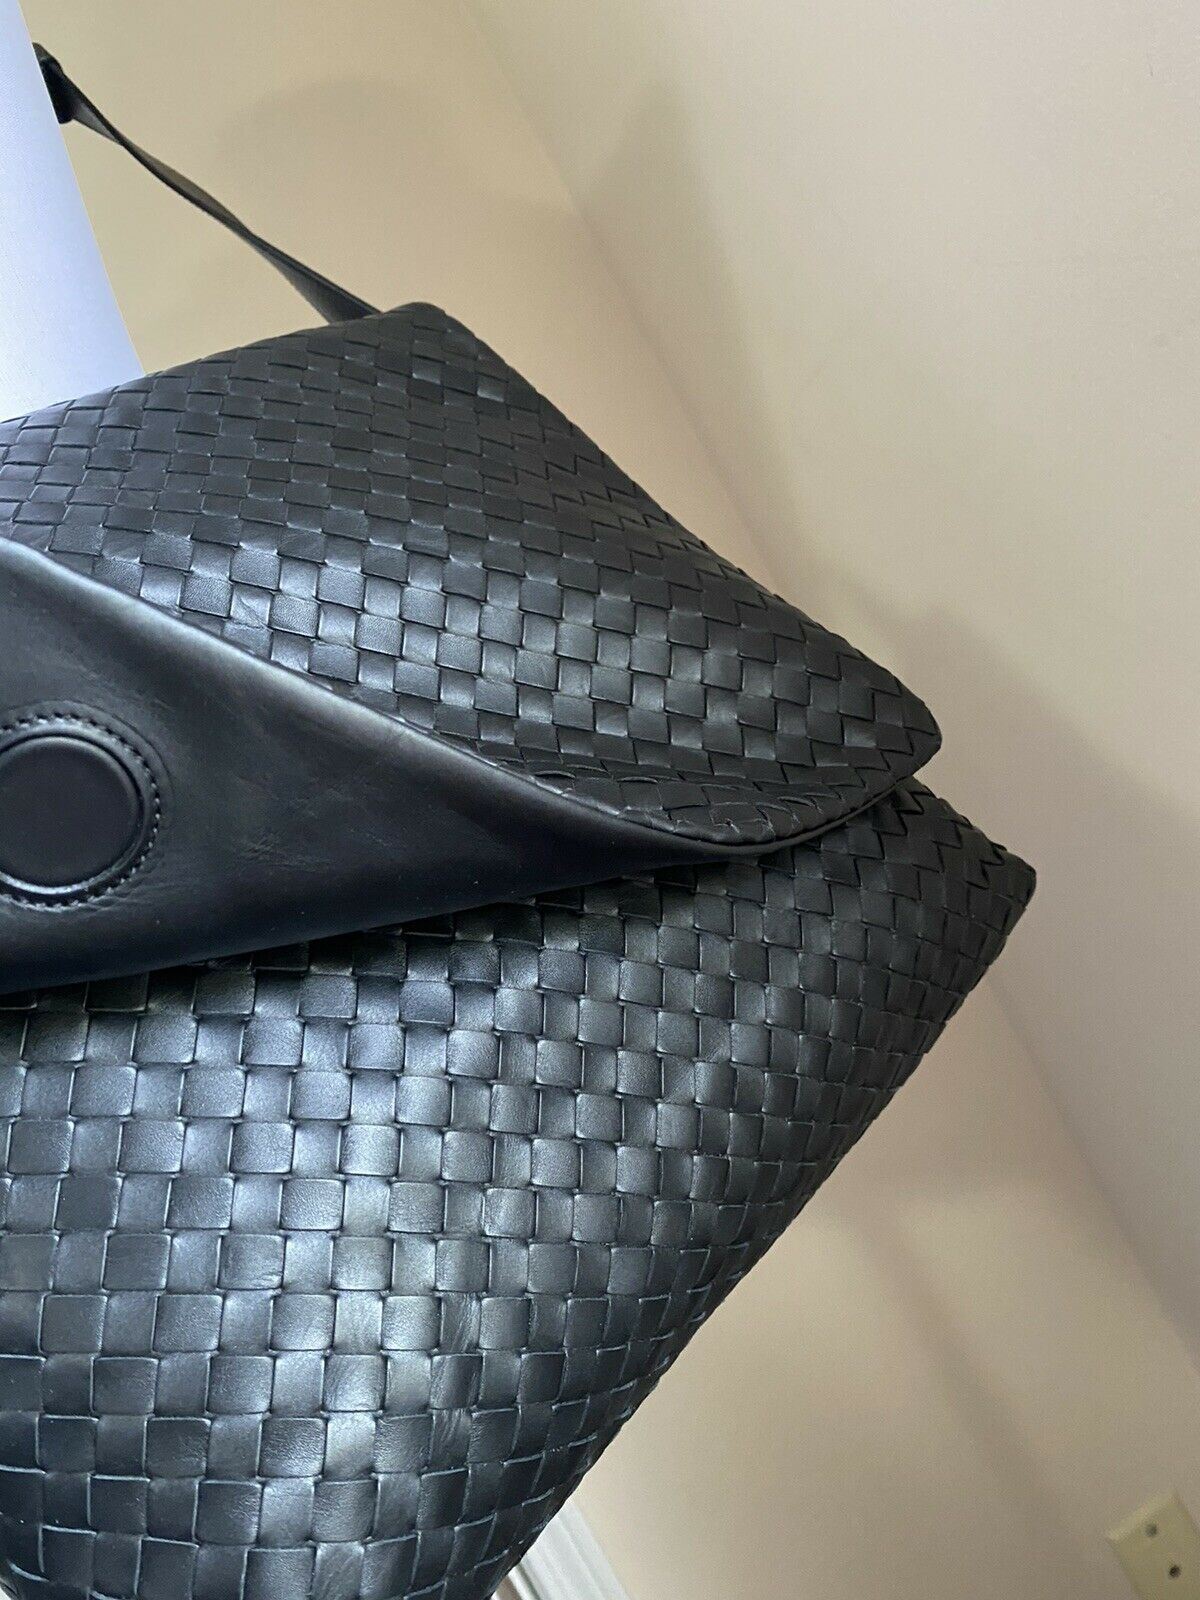 New $3000 Bottega Veneta Leather Messenger Shoulder Bag Black 577538 Italy